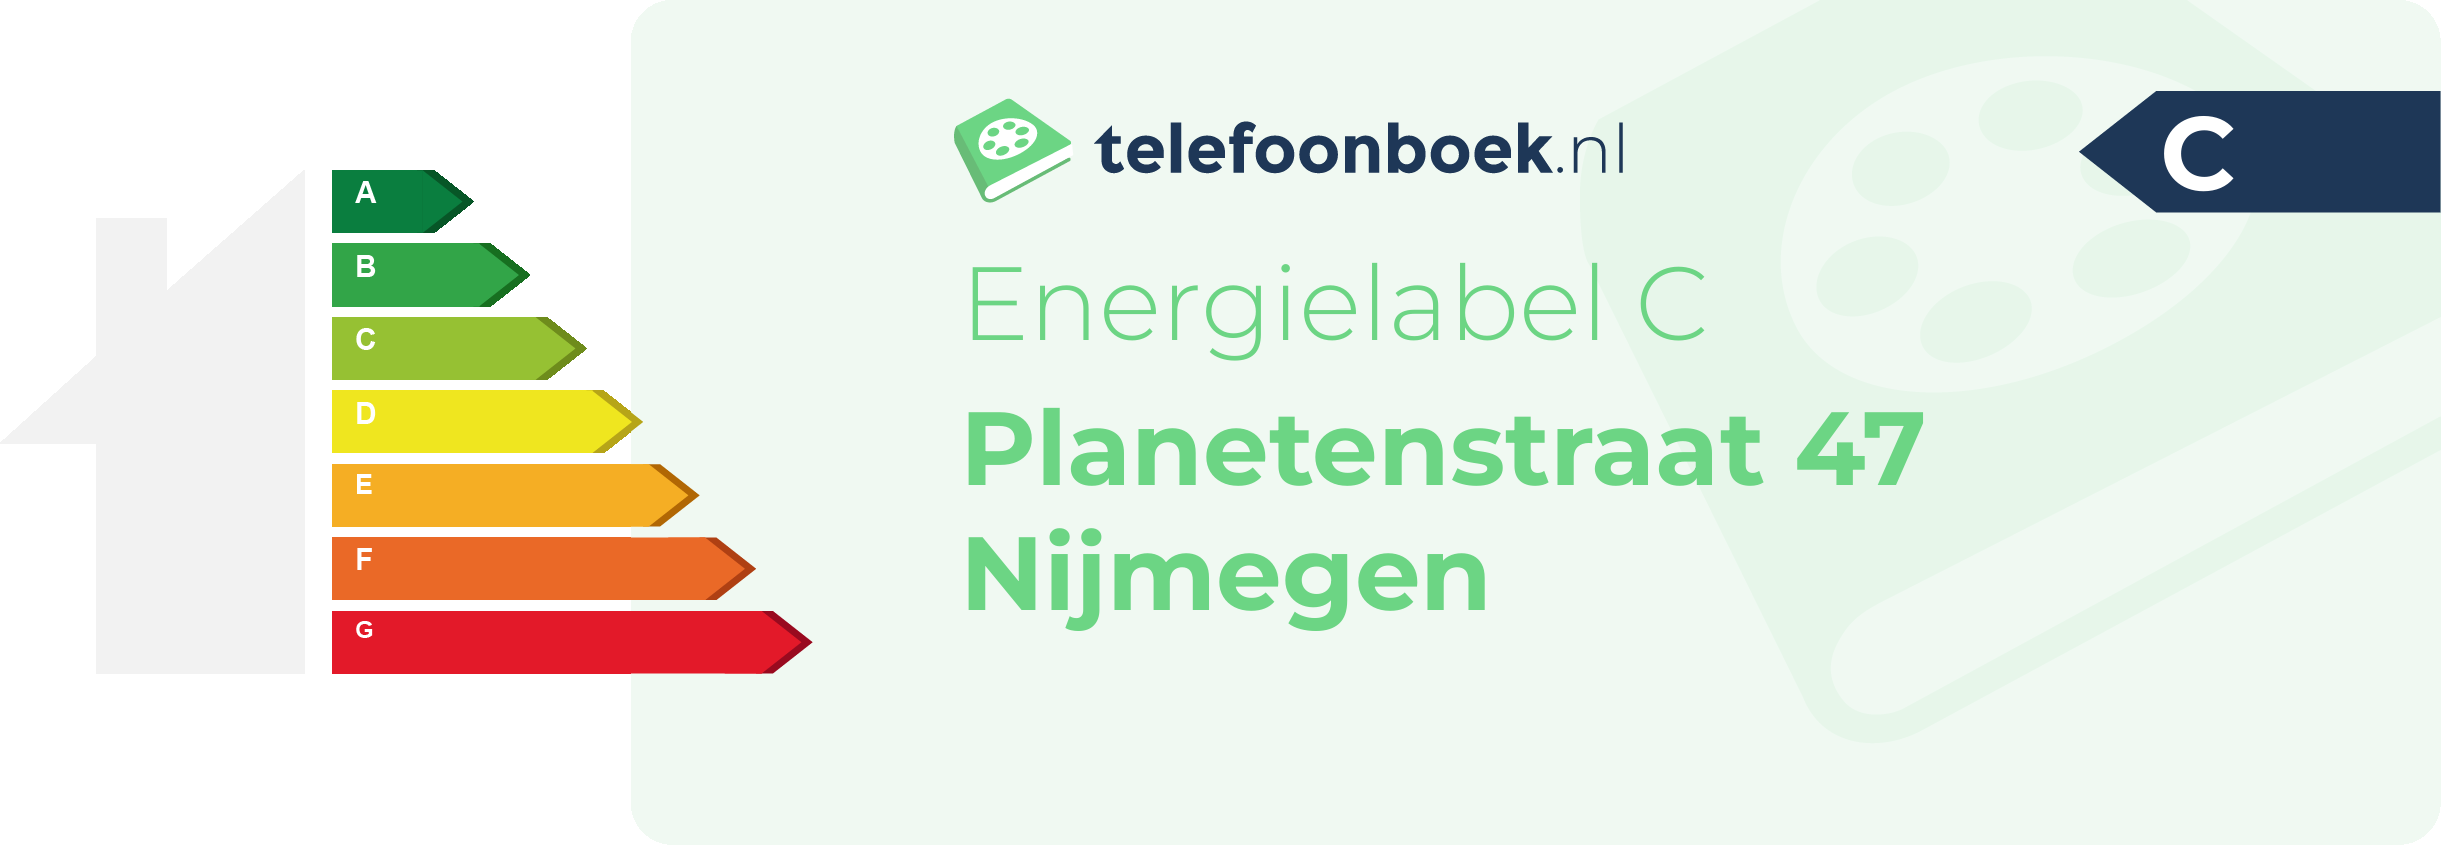 Energielabel Planetenstraat 47 Nijmegen